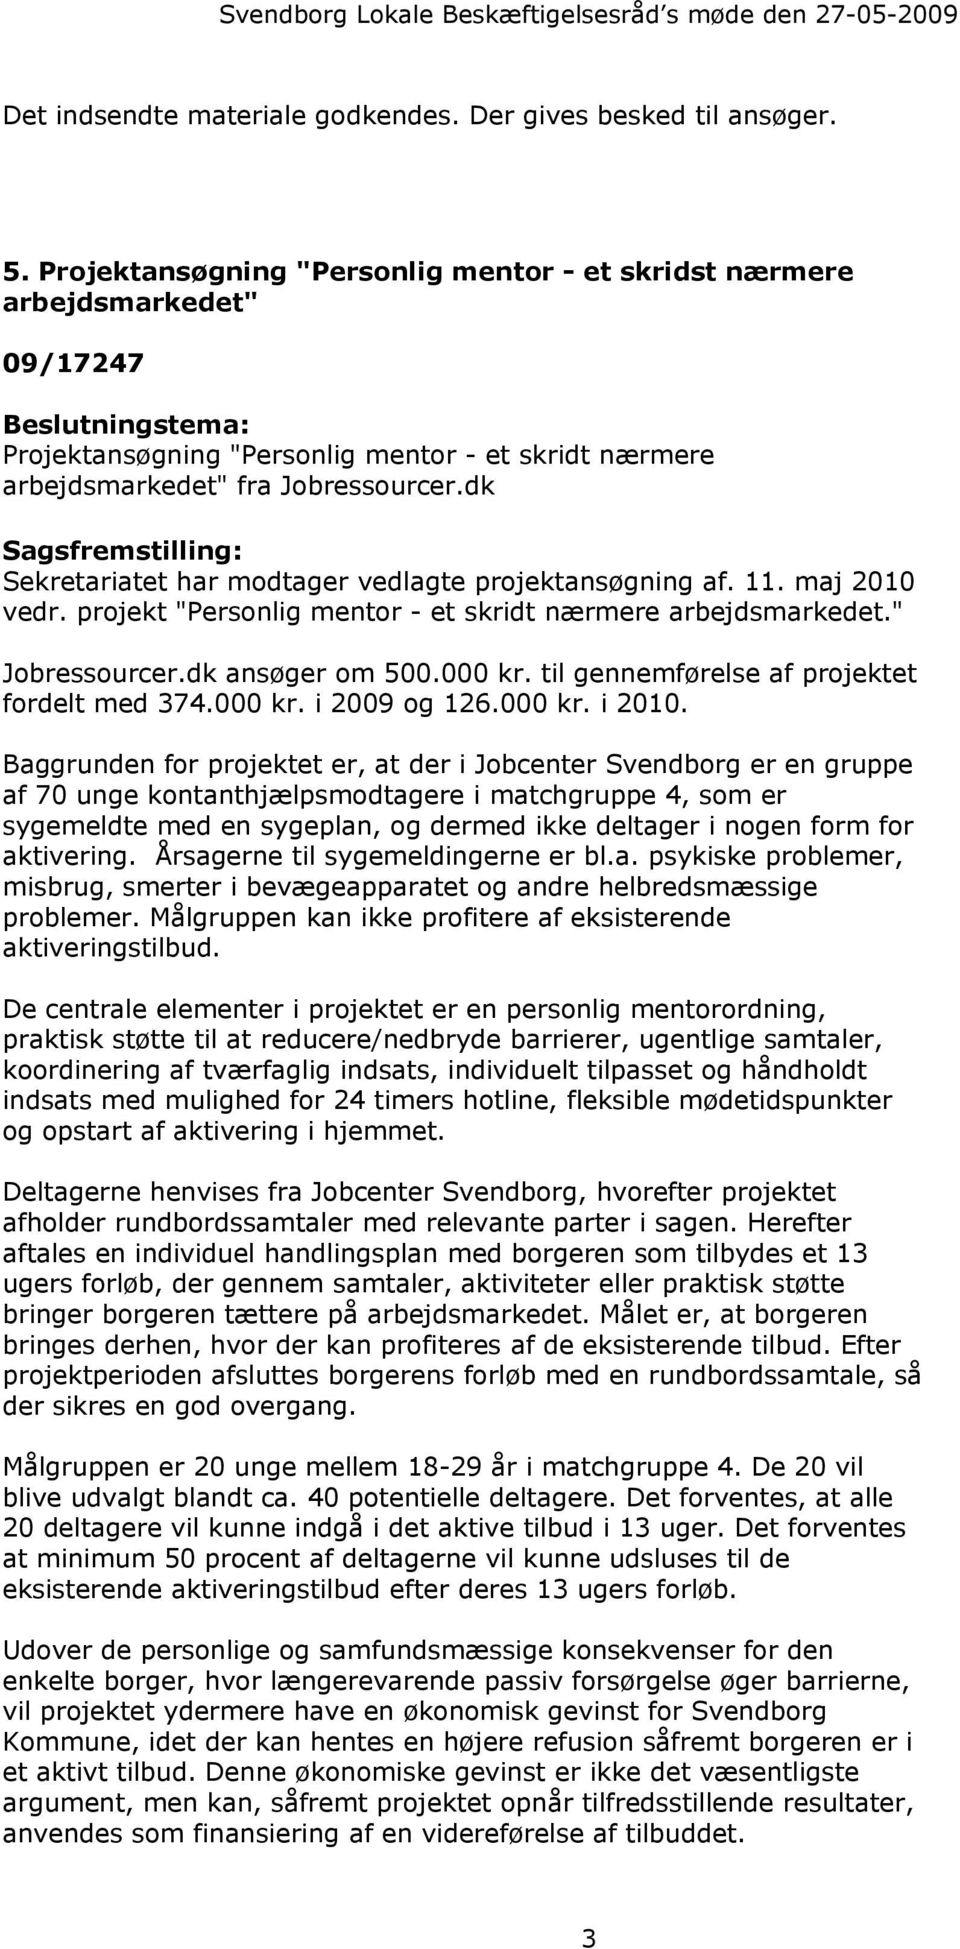 dk Sekretariatet har modtager vedlagte projektansøgning af. 11. maj 2010 vedr. projekt "Personlig mentor - et skridt nærmere arbejdsmarkedet." Jobressourcer.dk ansøger om 500.000 kr.